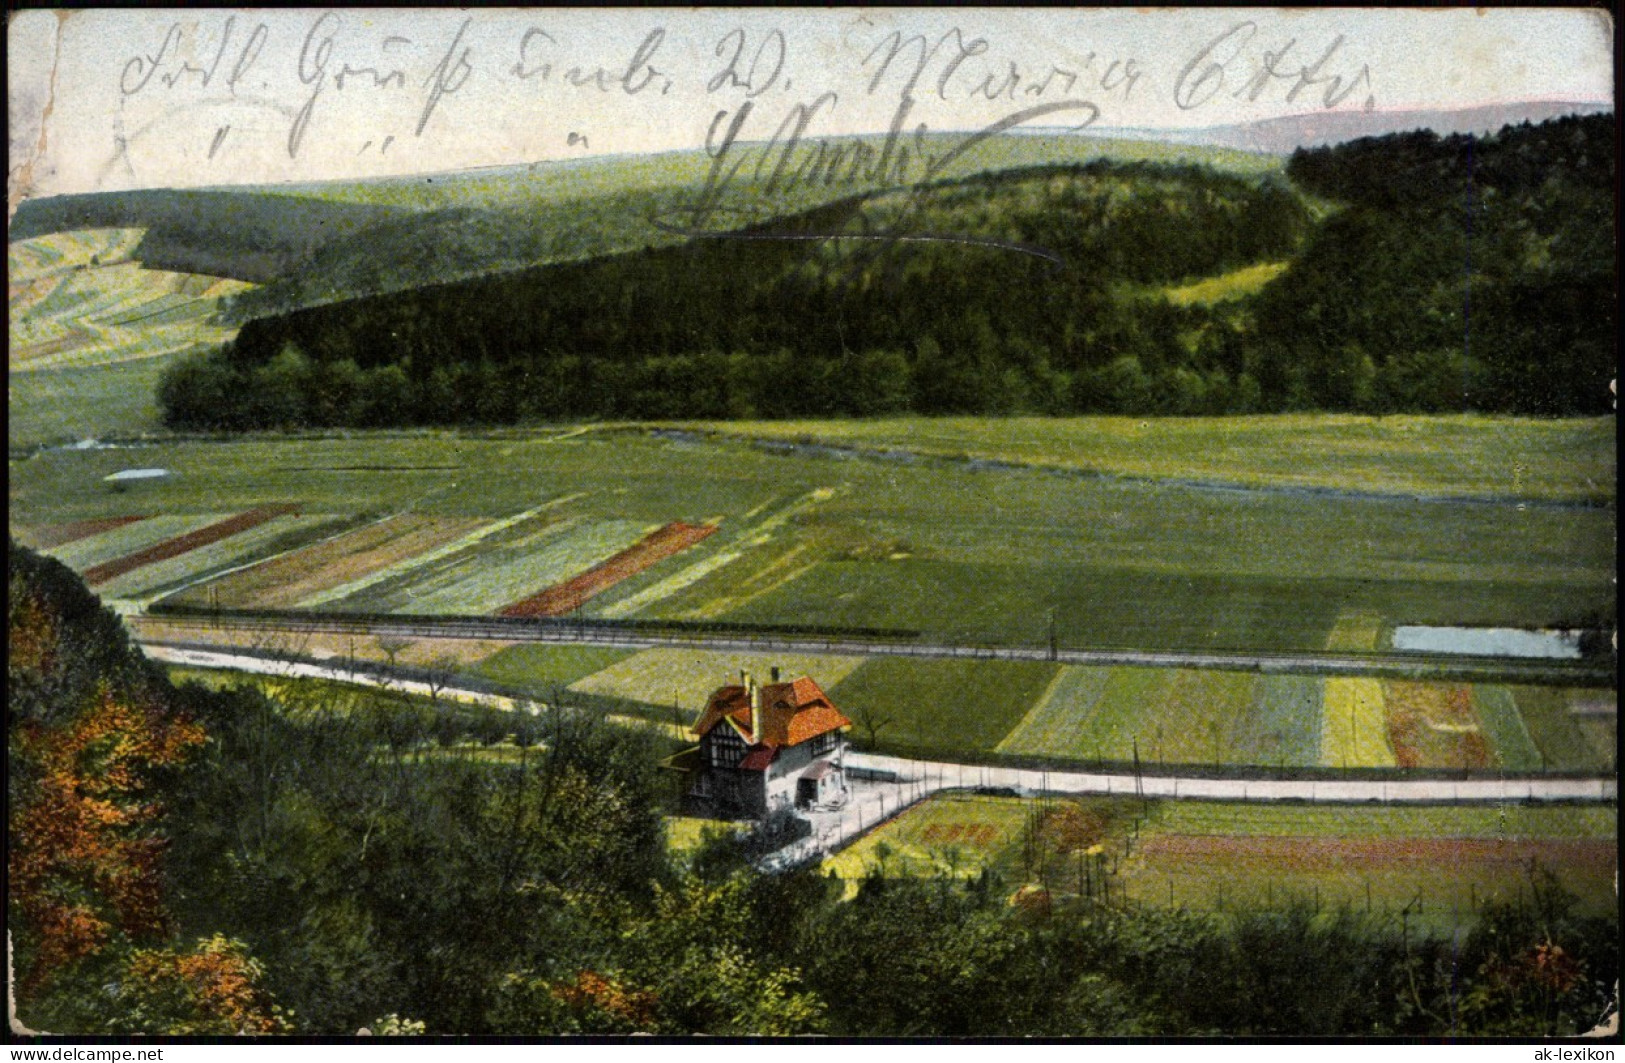 Ansichtskarte Bad Hersfeld Blick Auf Die Waldschenke 1907 - Bad Hersfeld